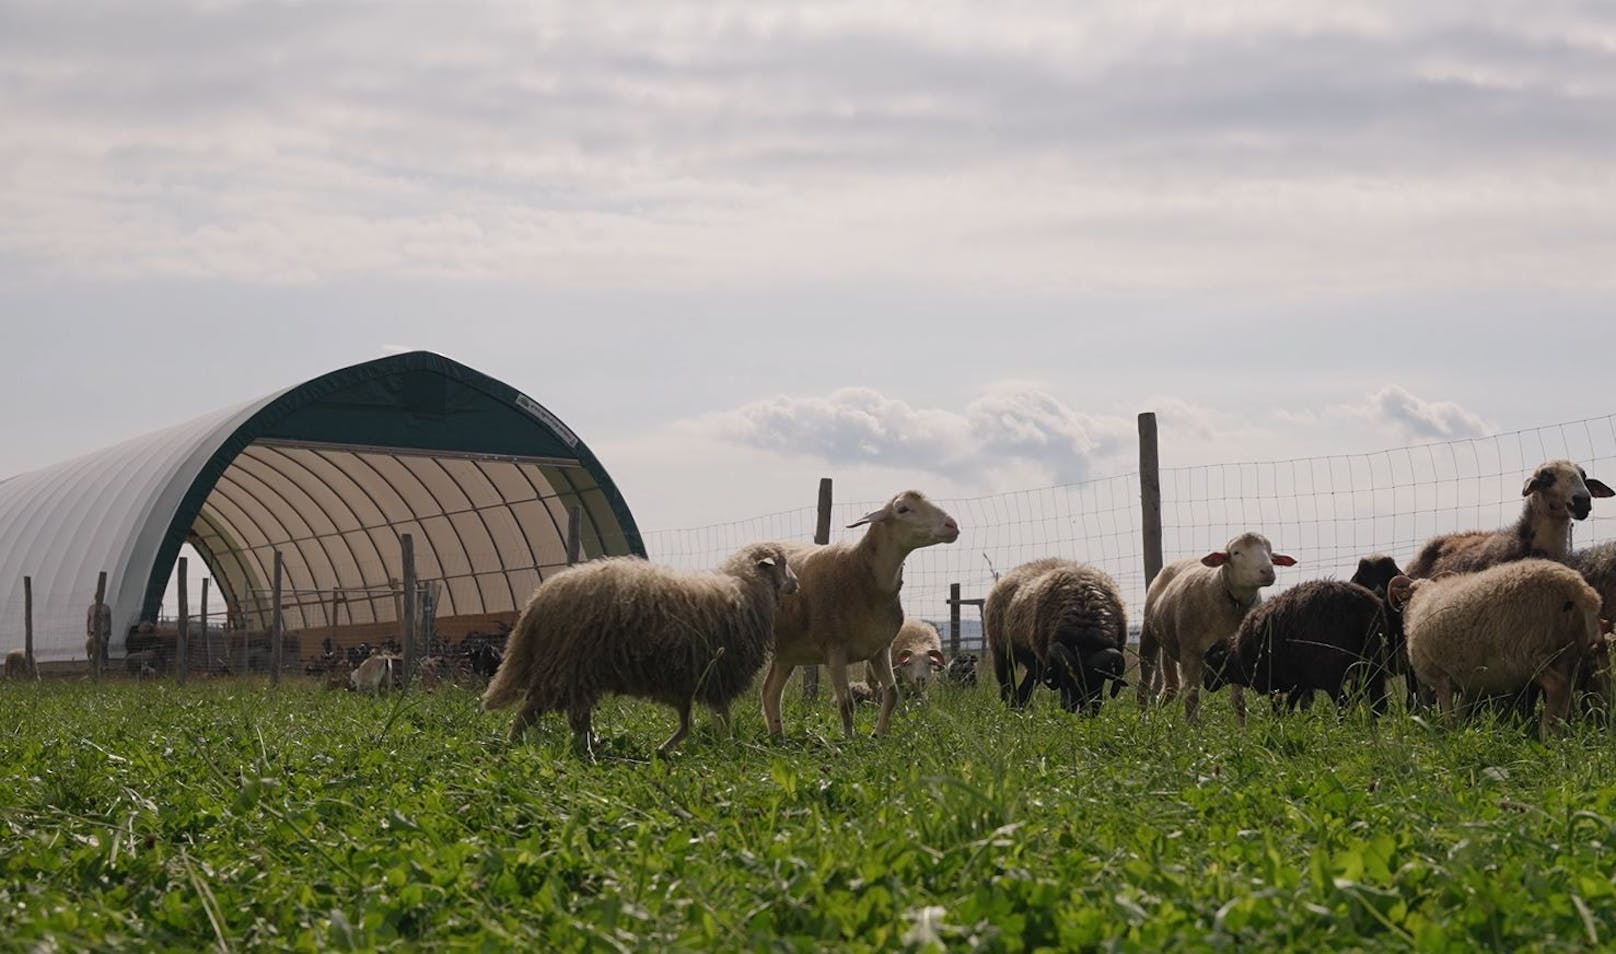 Innerhalb kurzer Zeit wurde ein mobiler Stall auf Gut Aiderbichl in Eslarn aufgestellt, um über 300 Schafe und Ziegen vor dem Einschläfern zu retten.